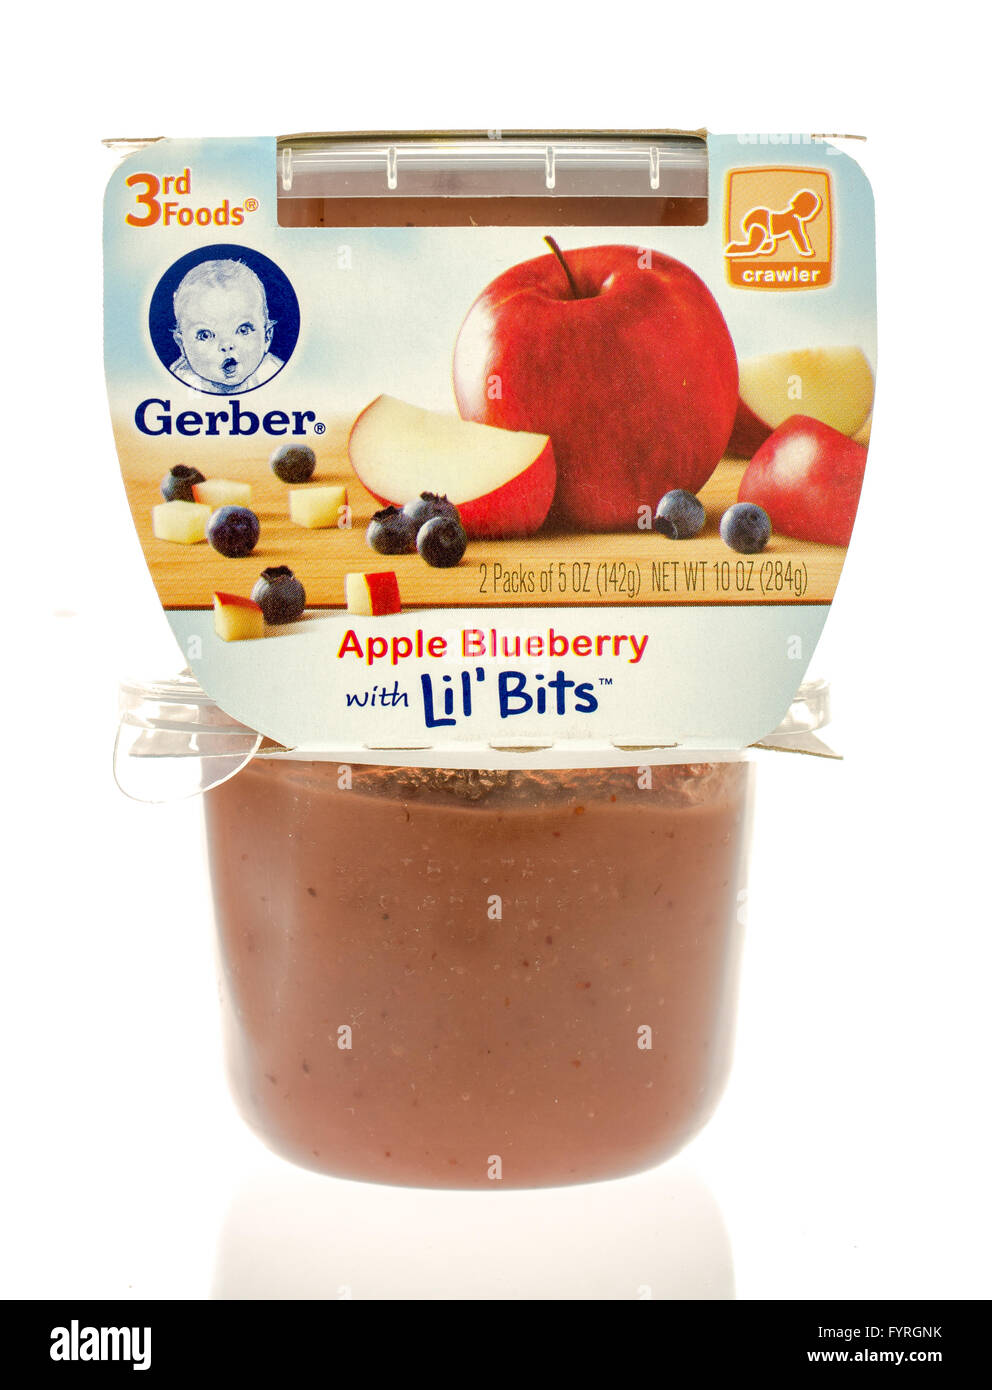 Winneconne, Wisconsin - 19. November 2015: Paket von Gerber-Apfel-Heidelbeere mit Lil' Bit Babynahrung. Stockfoto